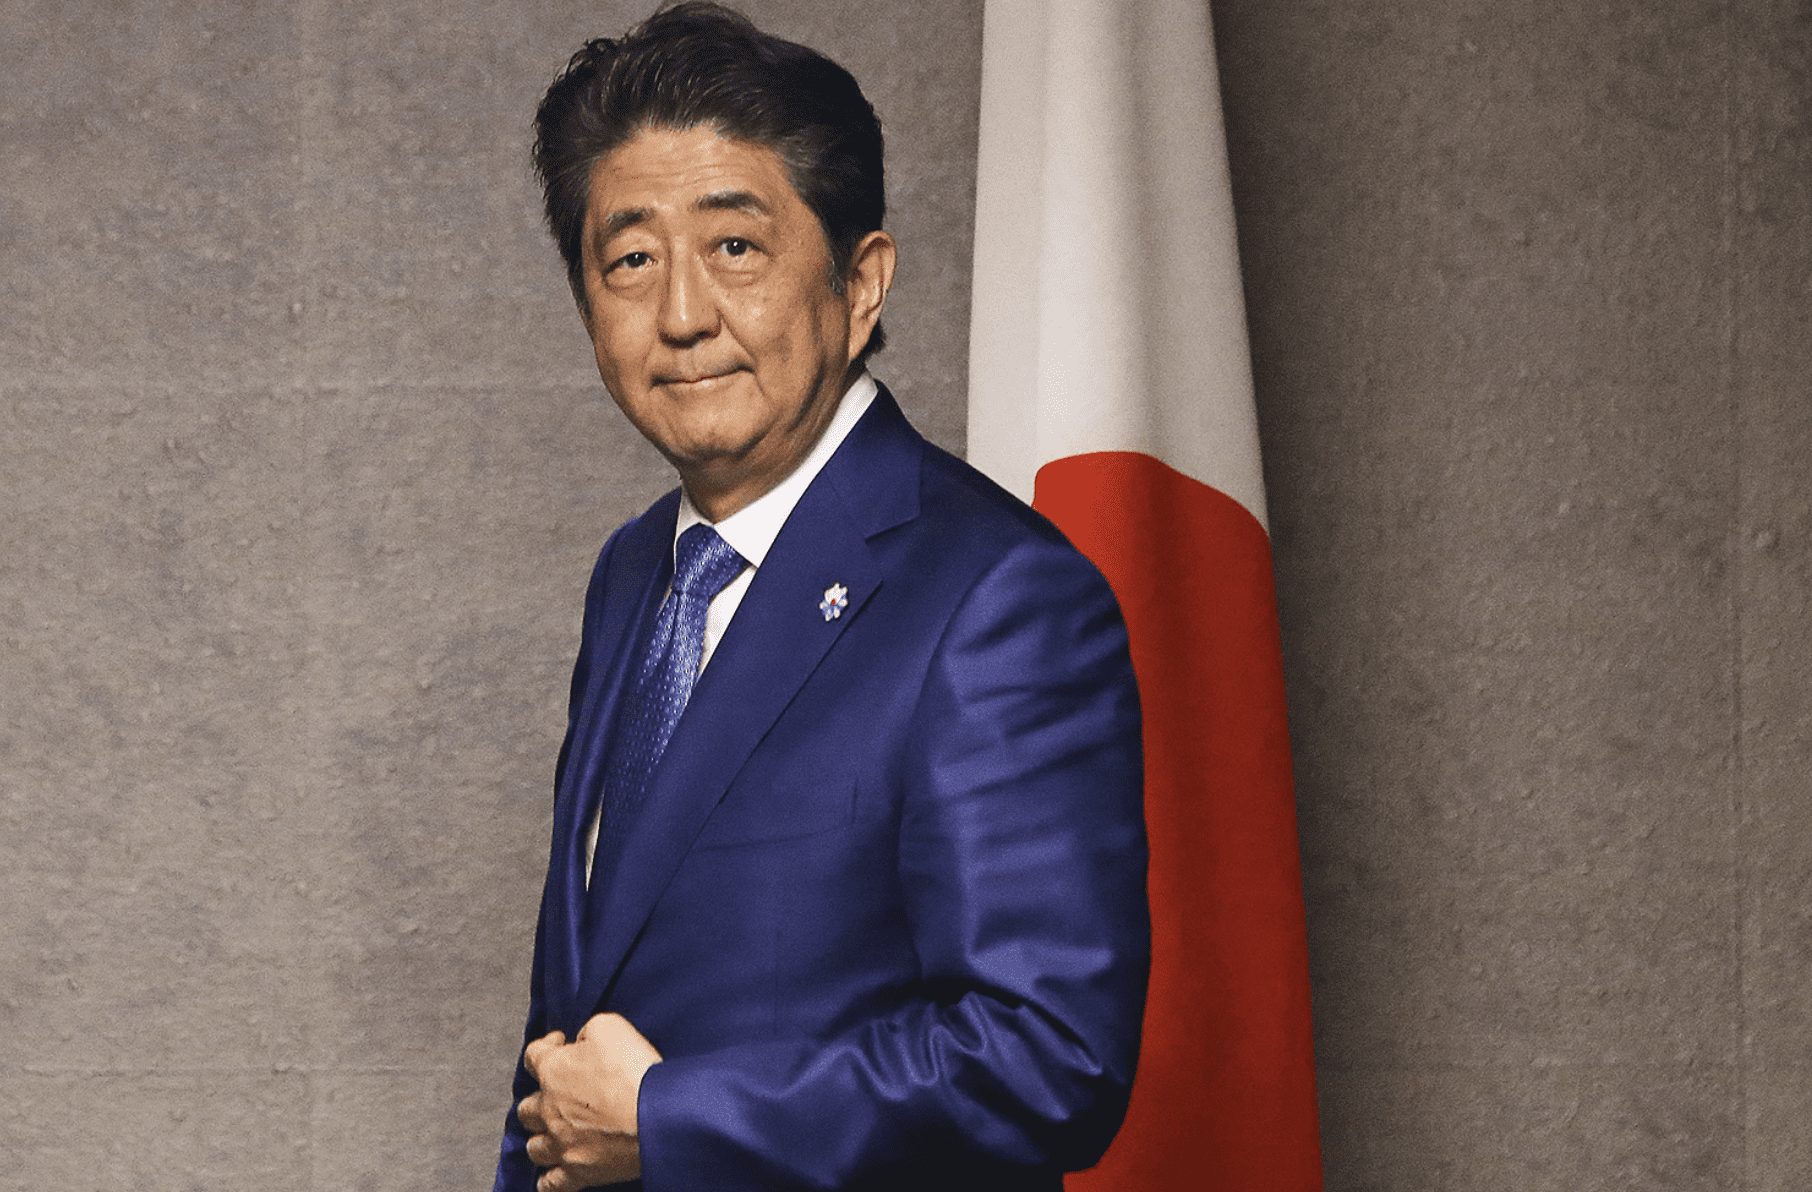 Former Japanese Prime Minister Assassinated During Speech